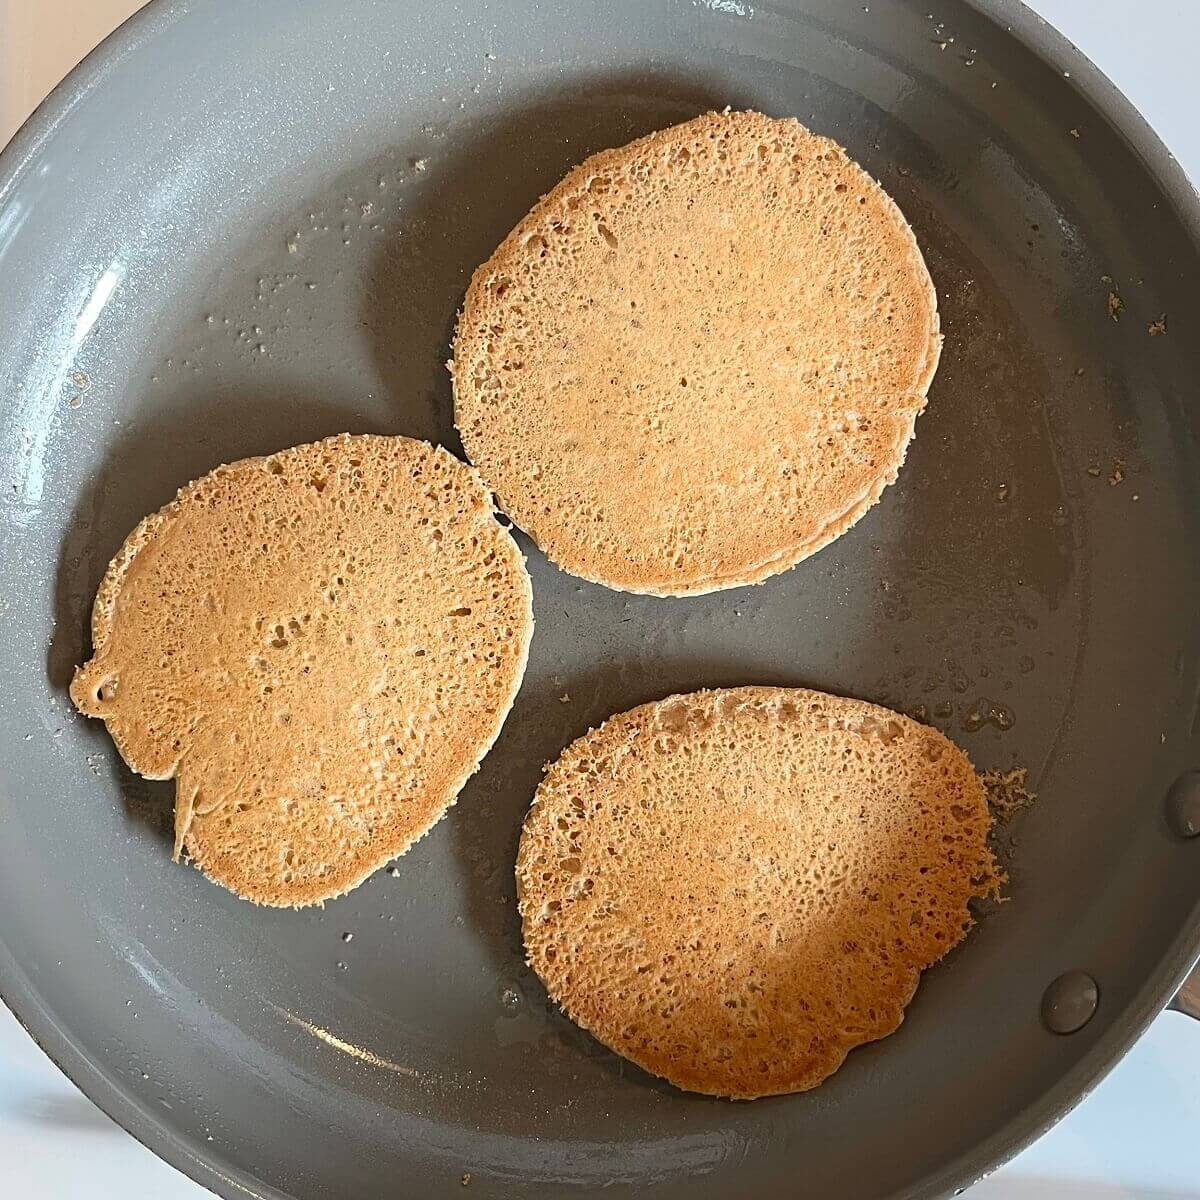 Vegan oat pancakes cooking in a pan.